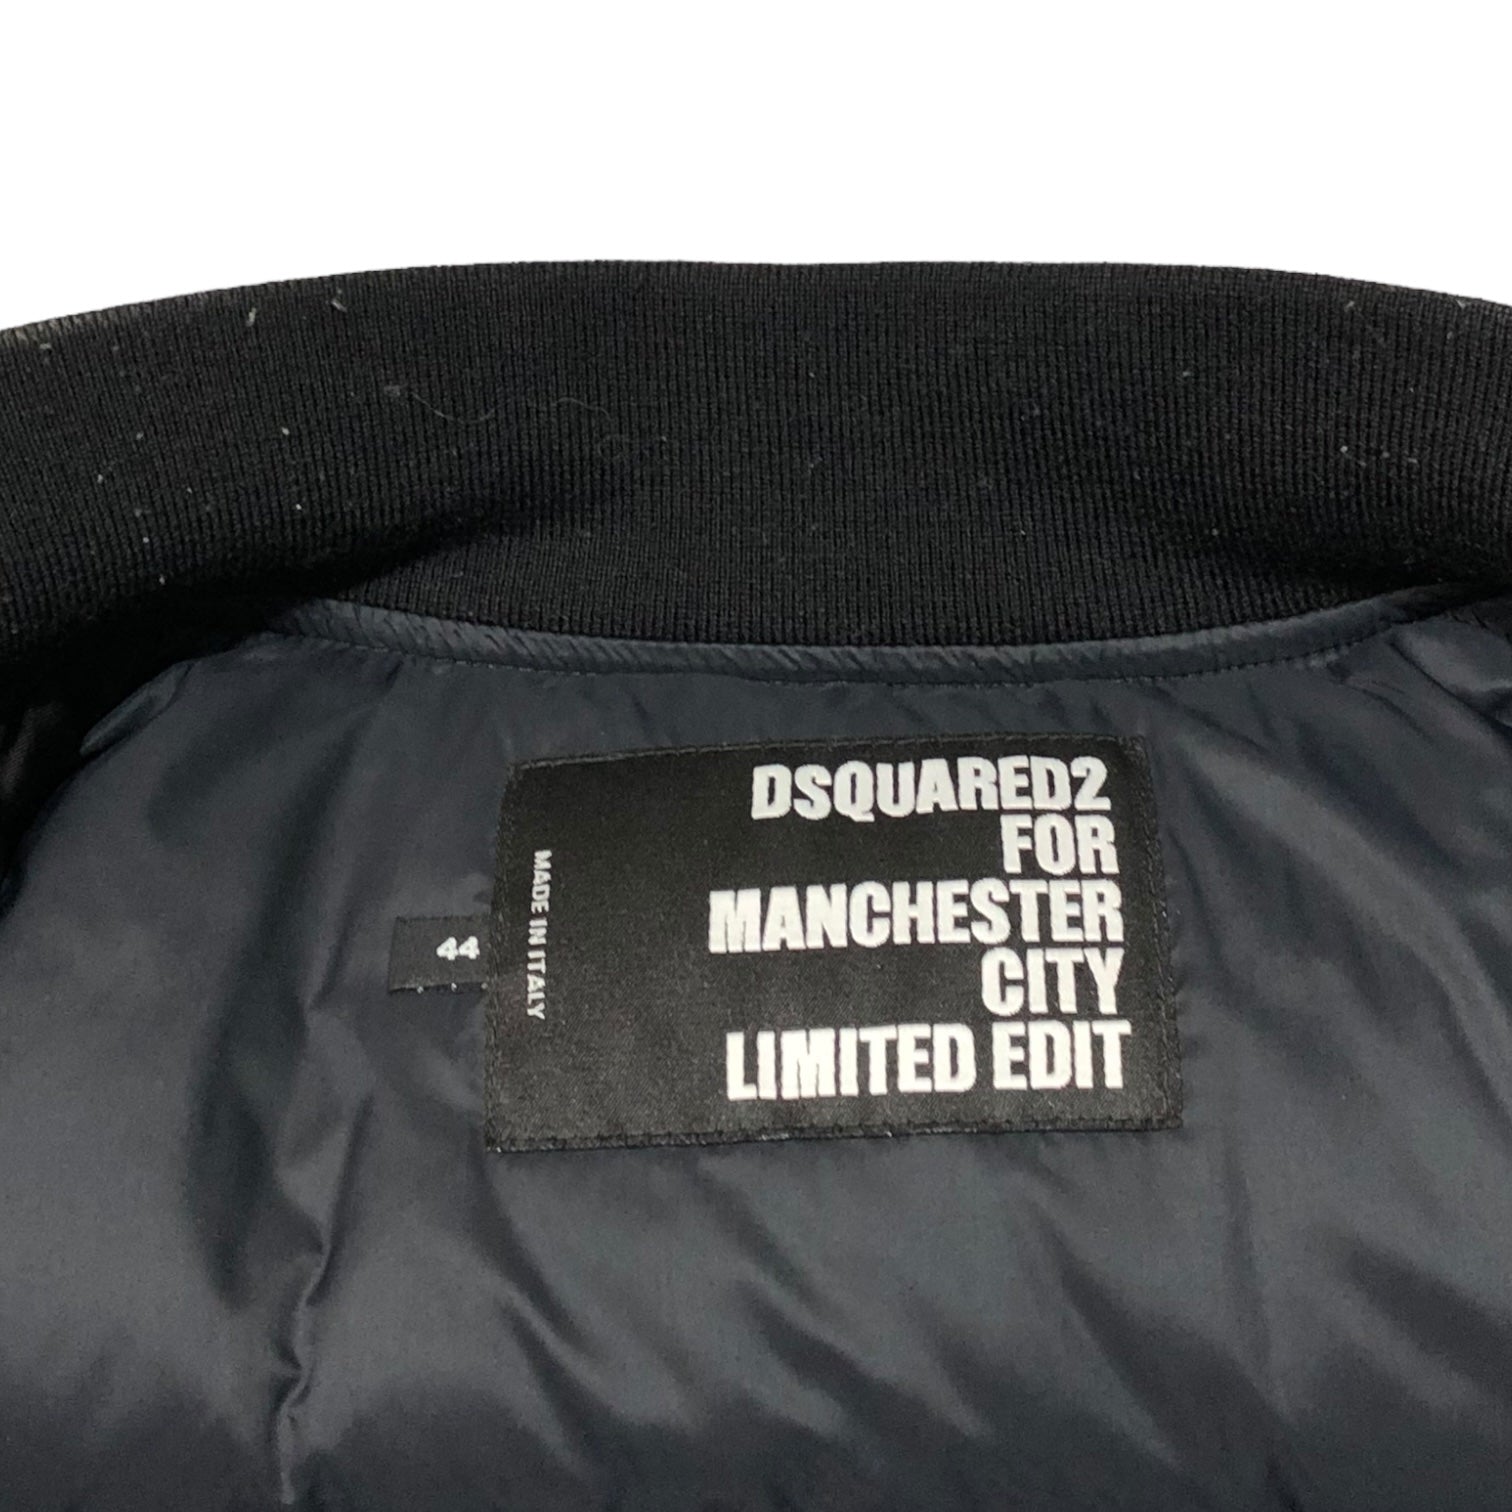 DSQUARED2(ディースクエアード) 23SS Manchester City Bomber jacket マンチェスター シティ ボンバー ジャケット 参考定価28万6000円 S71AN0503 S78411 44(S程度) ブラック MA-1 ブルゾン ダウン